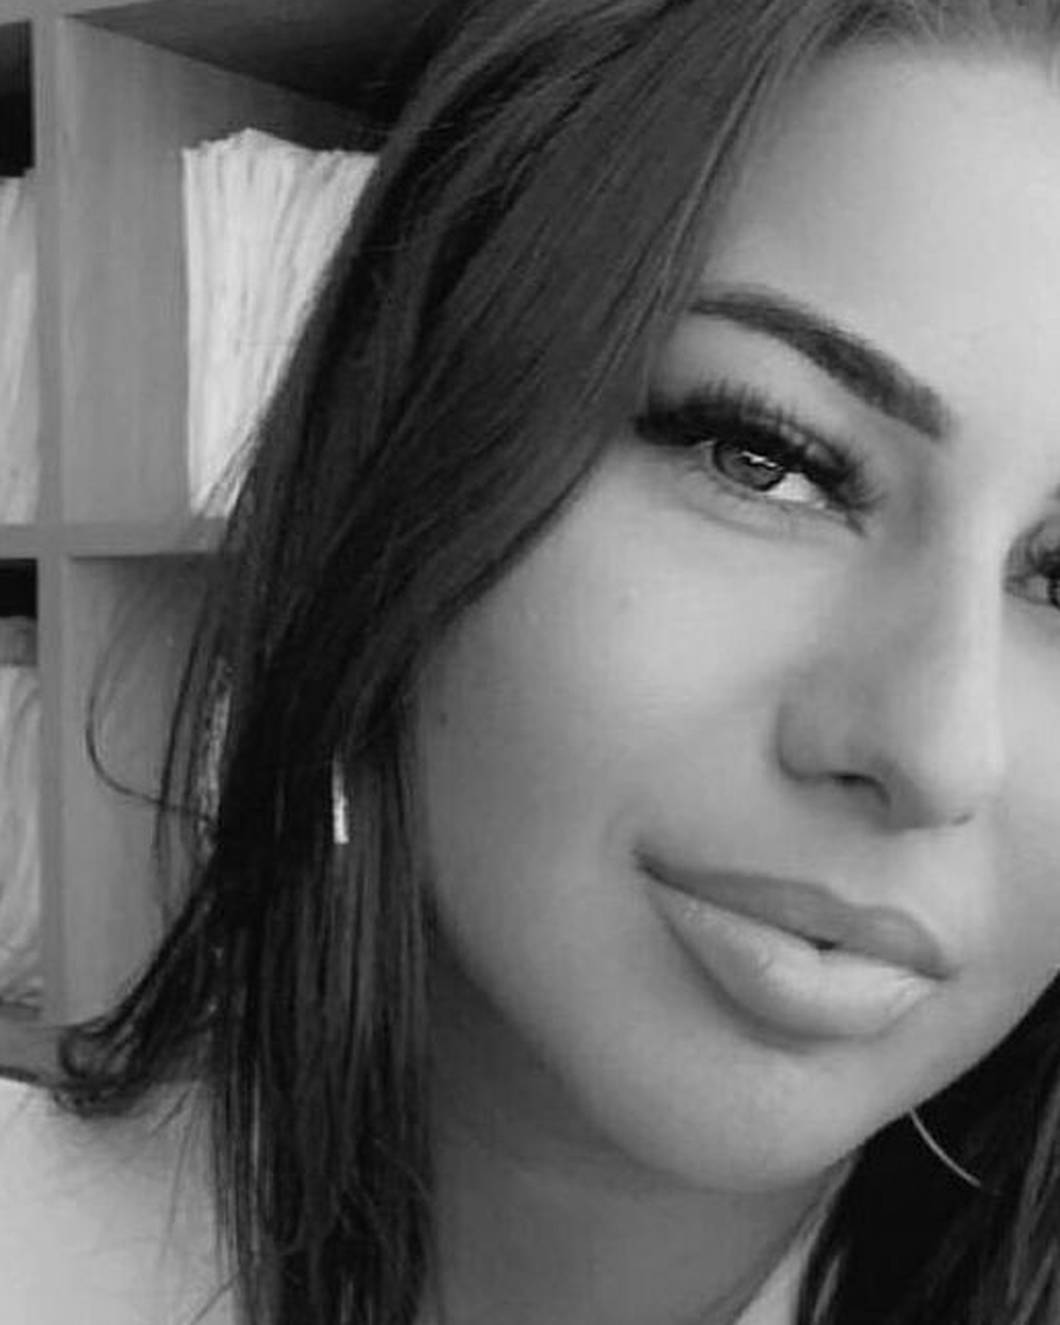 Oglasio se otac srpske pjevačice (28) koja je poginula u Dubaiju: 'Mislim da je išla snimiti selfie'